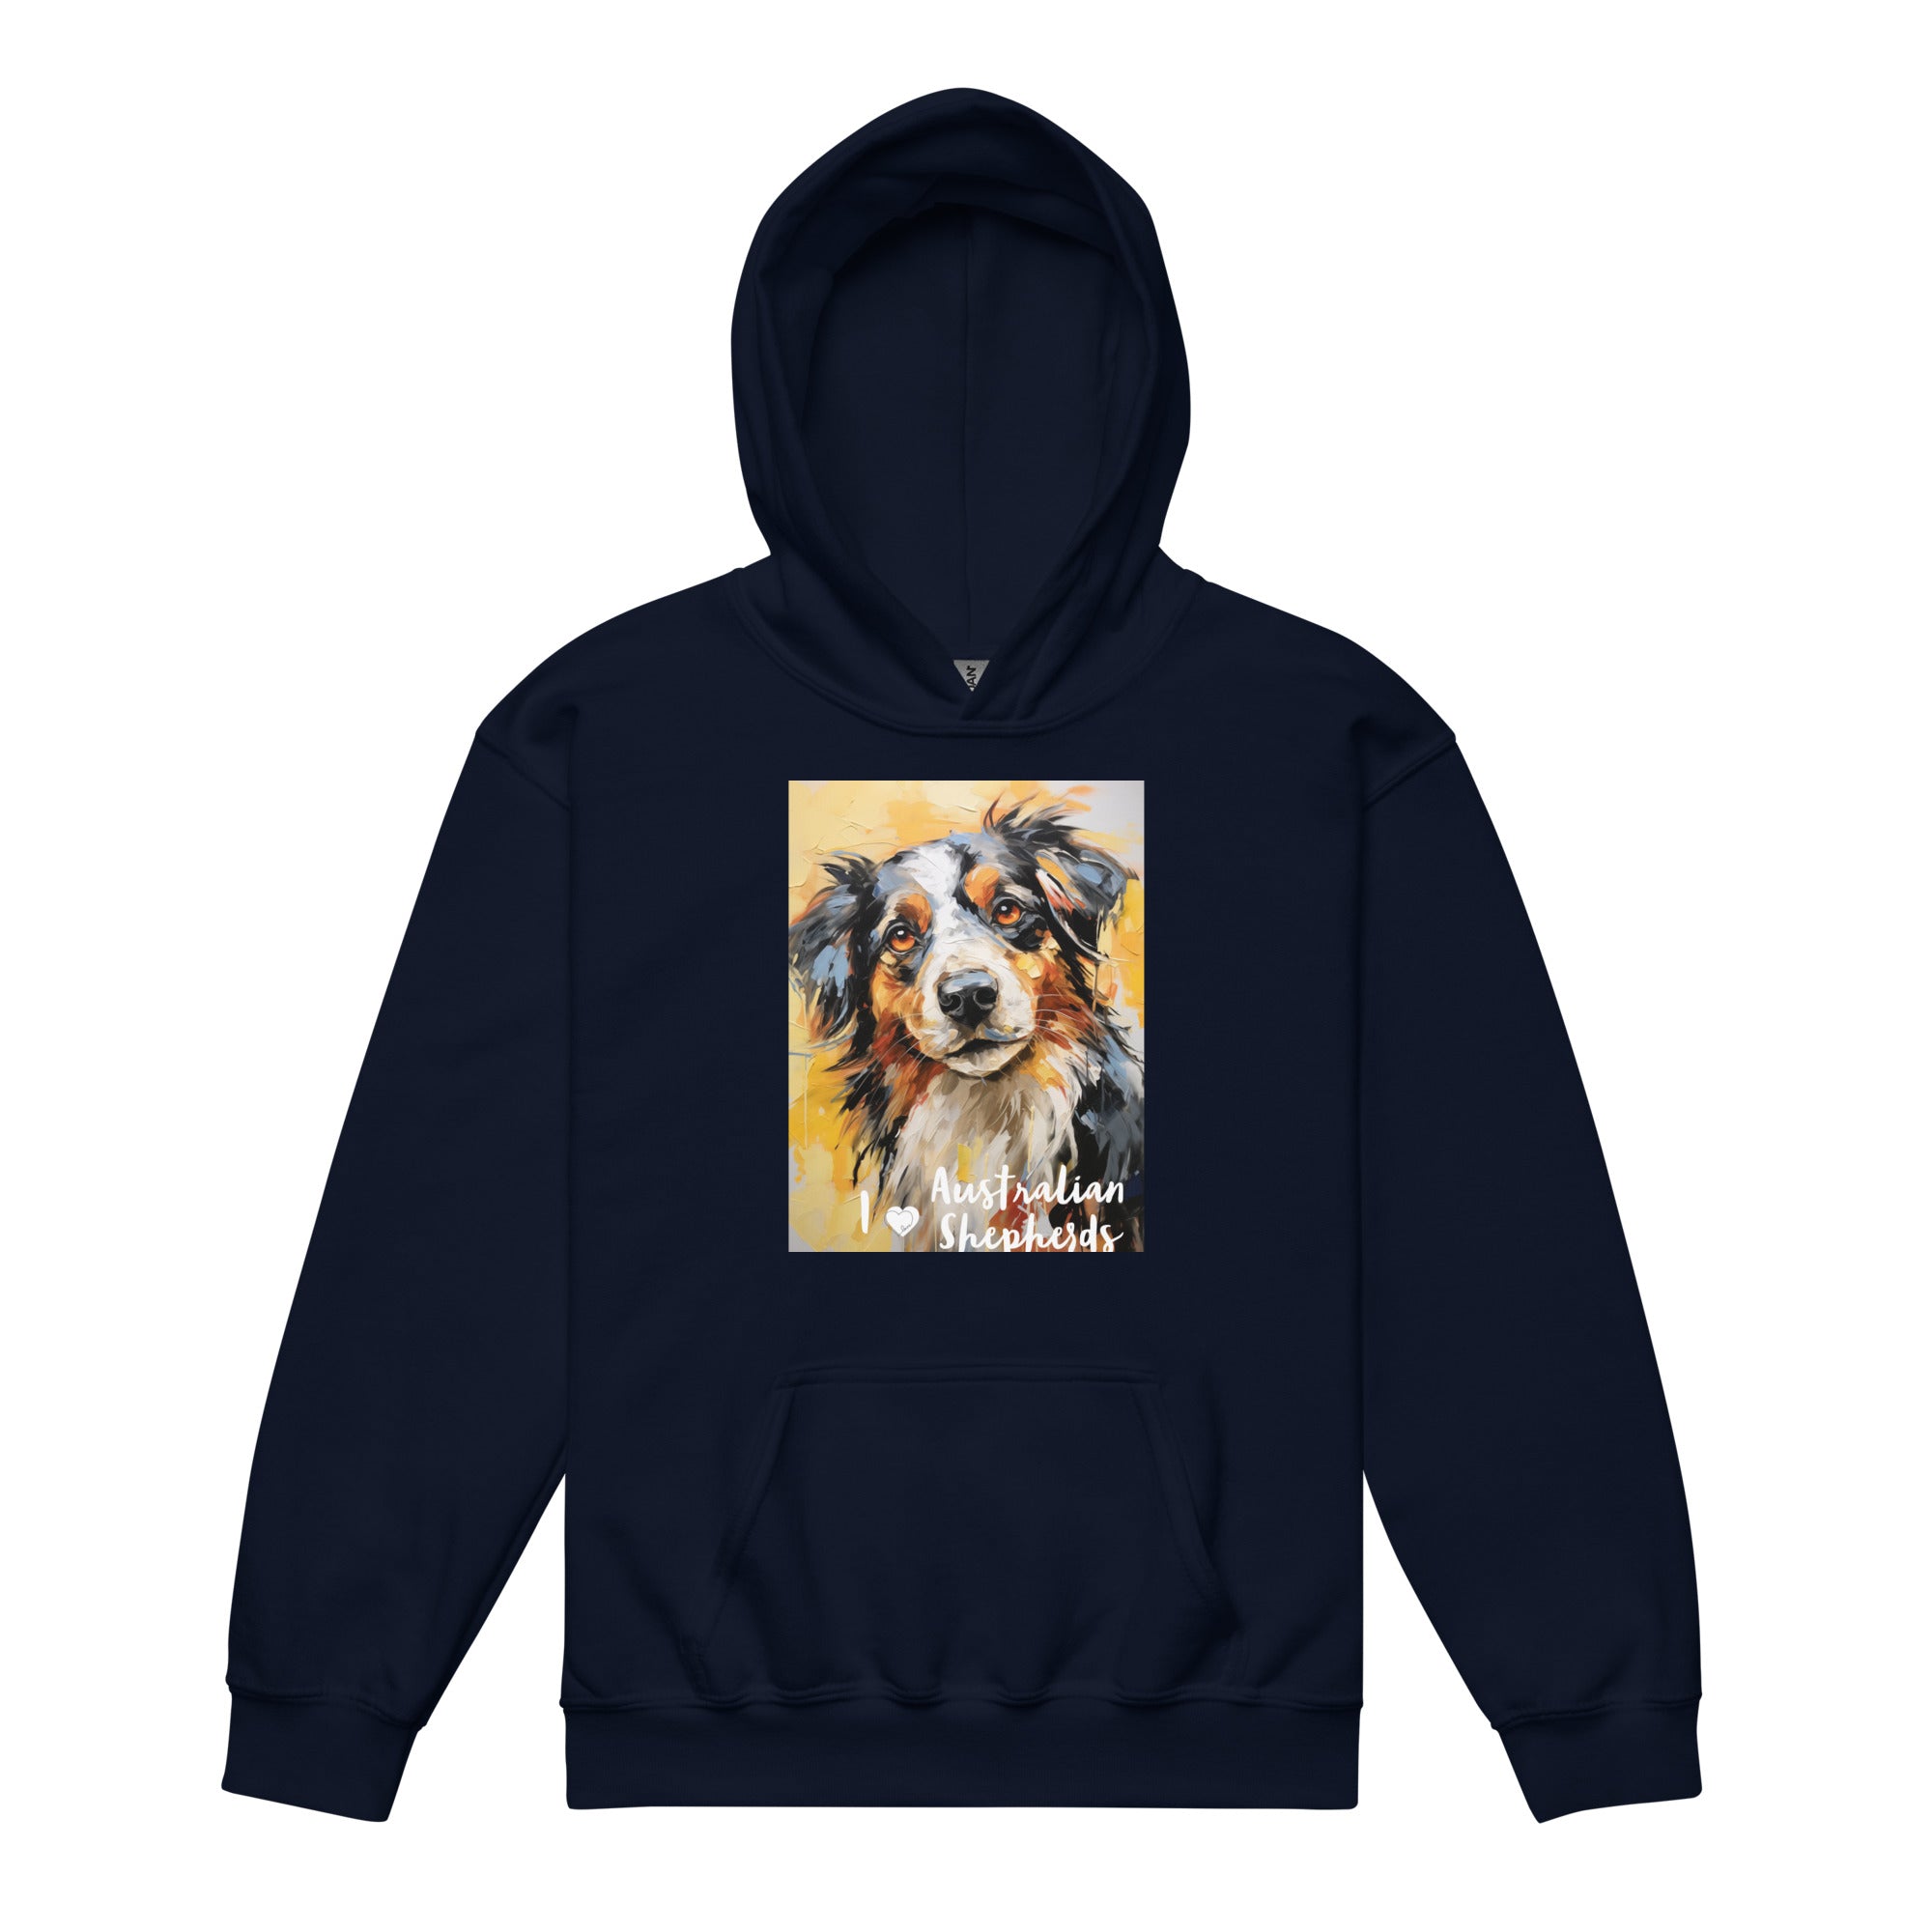 Youth heavy blend hoodieI ❤ Dogs - Australian Shepherd